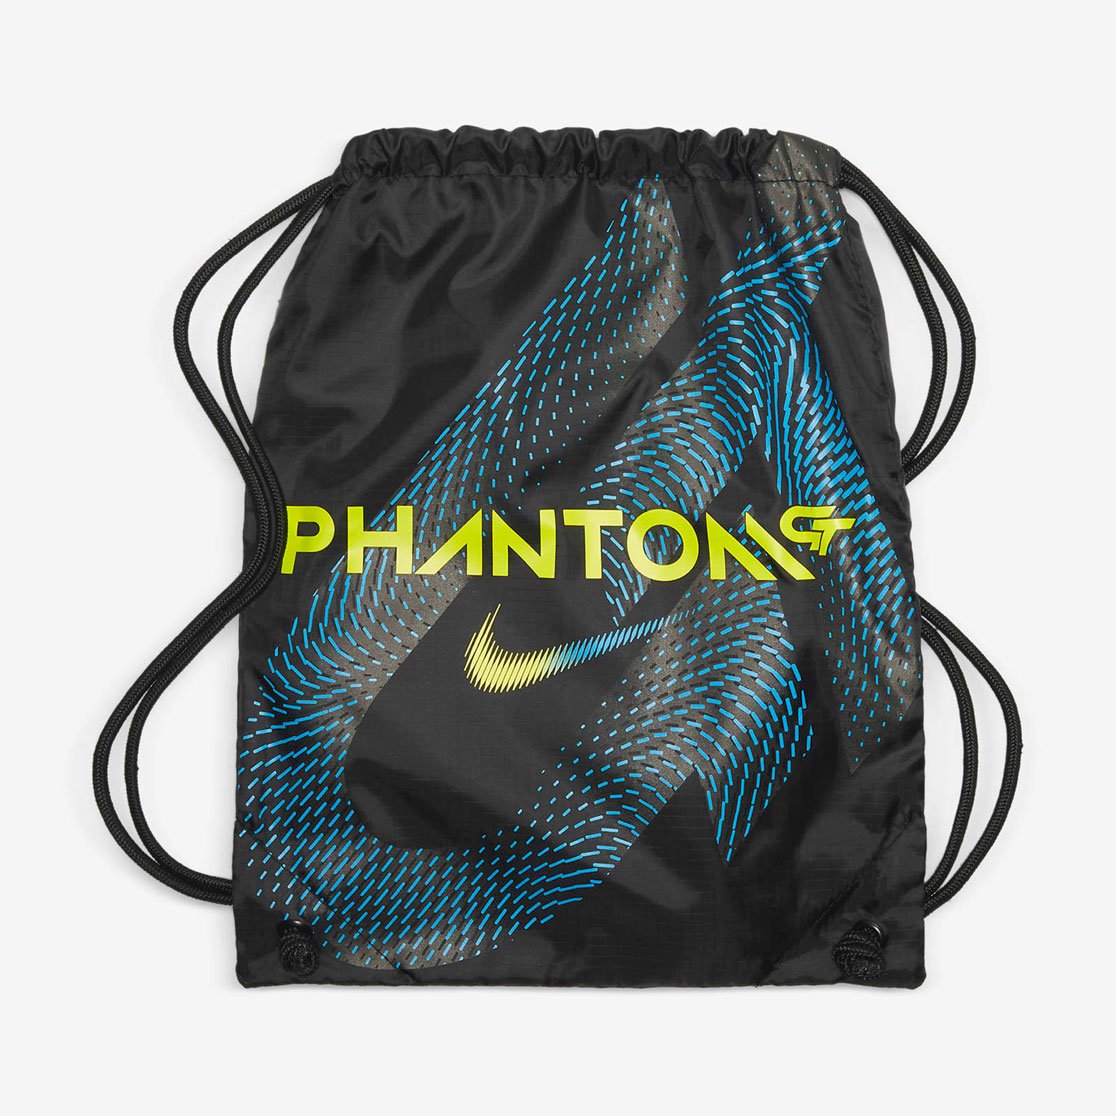 nike phantom bag